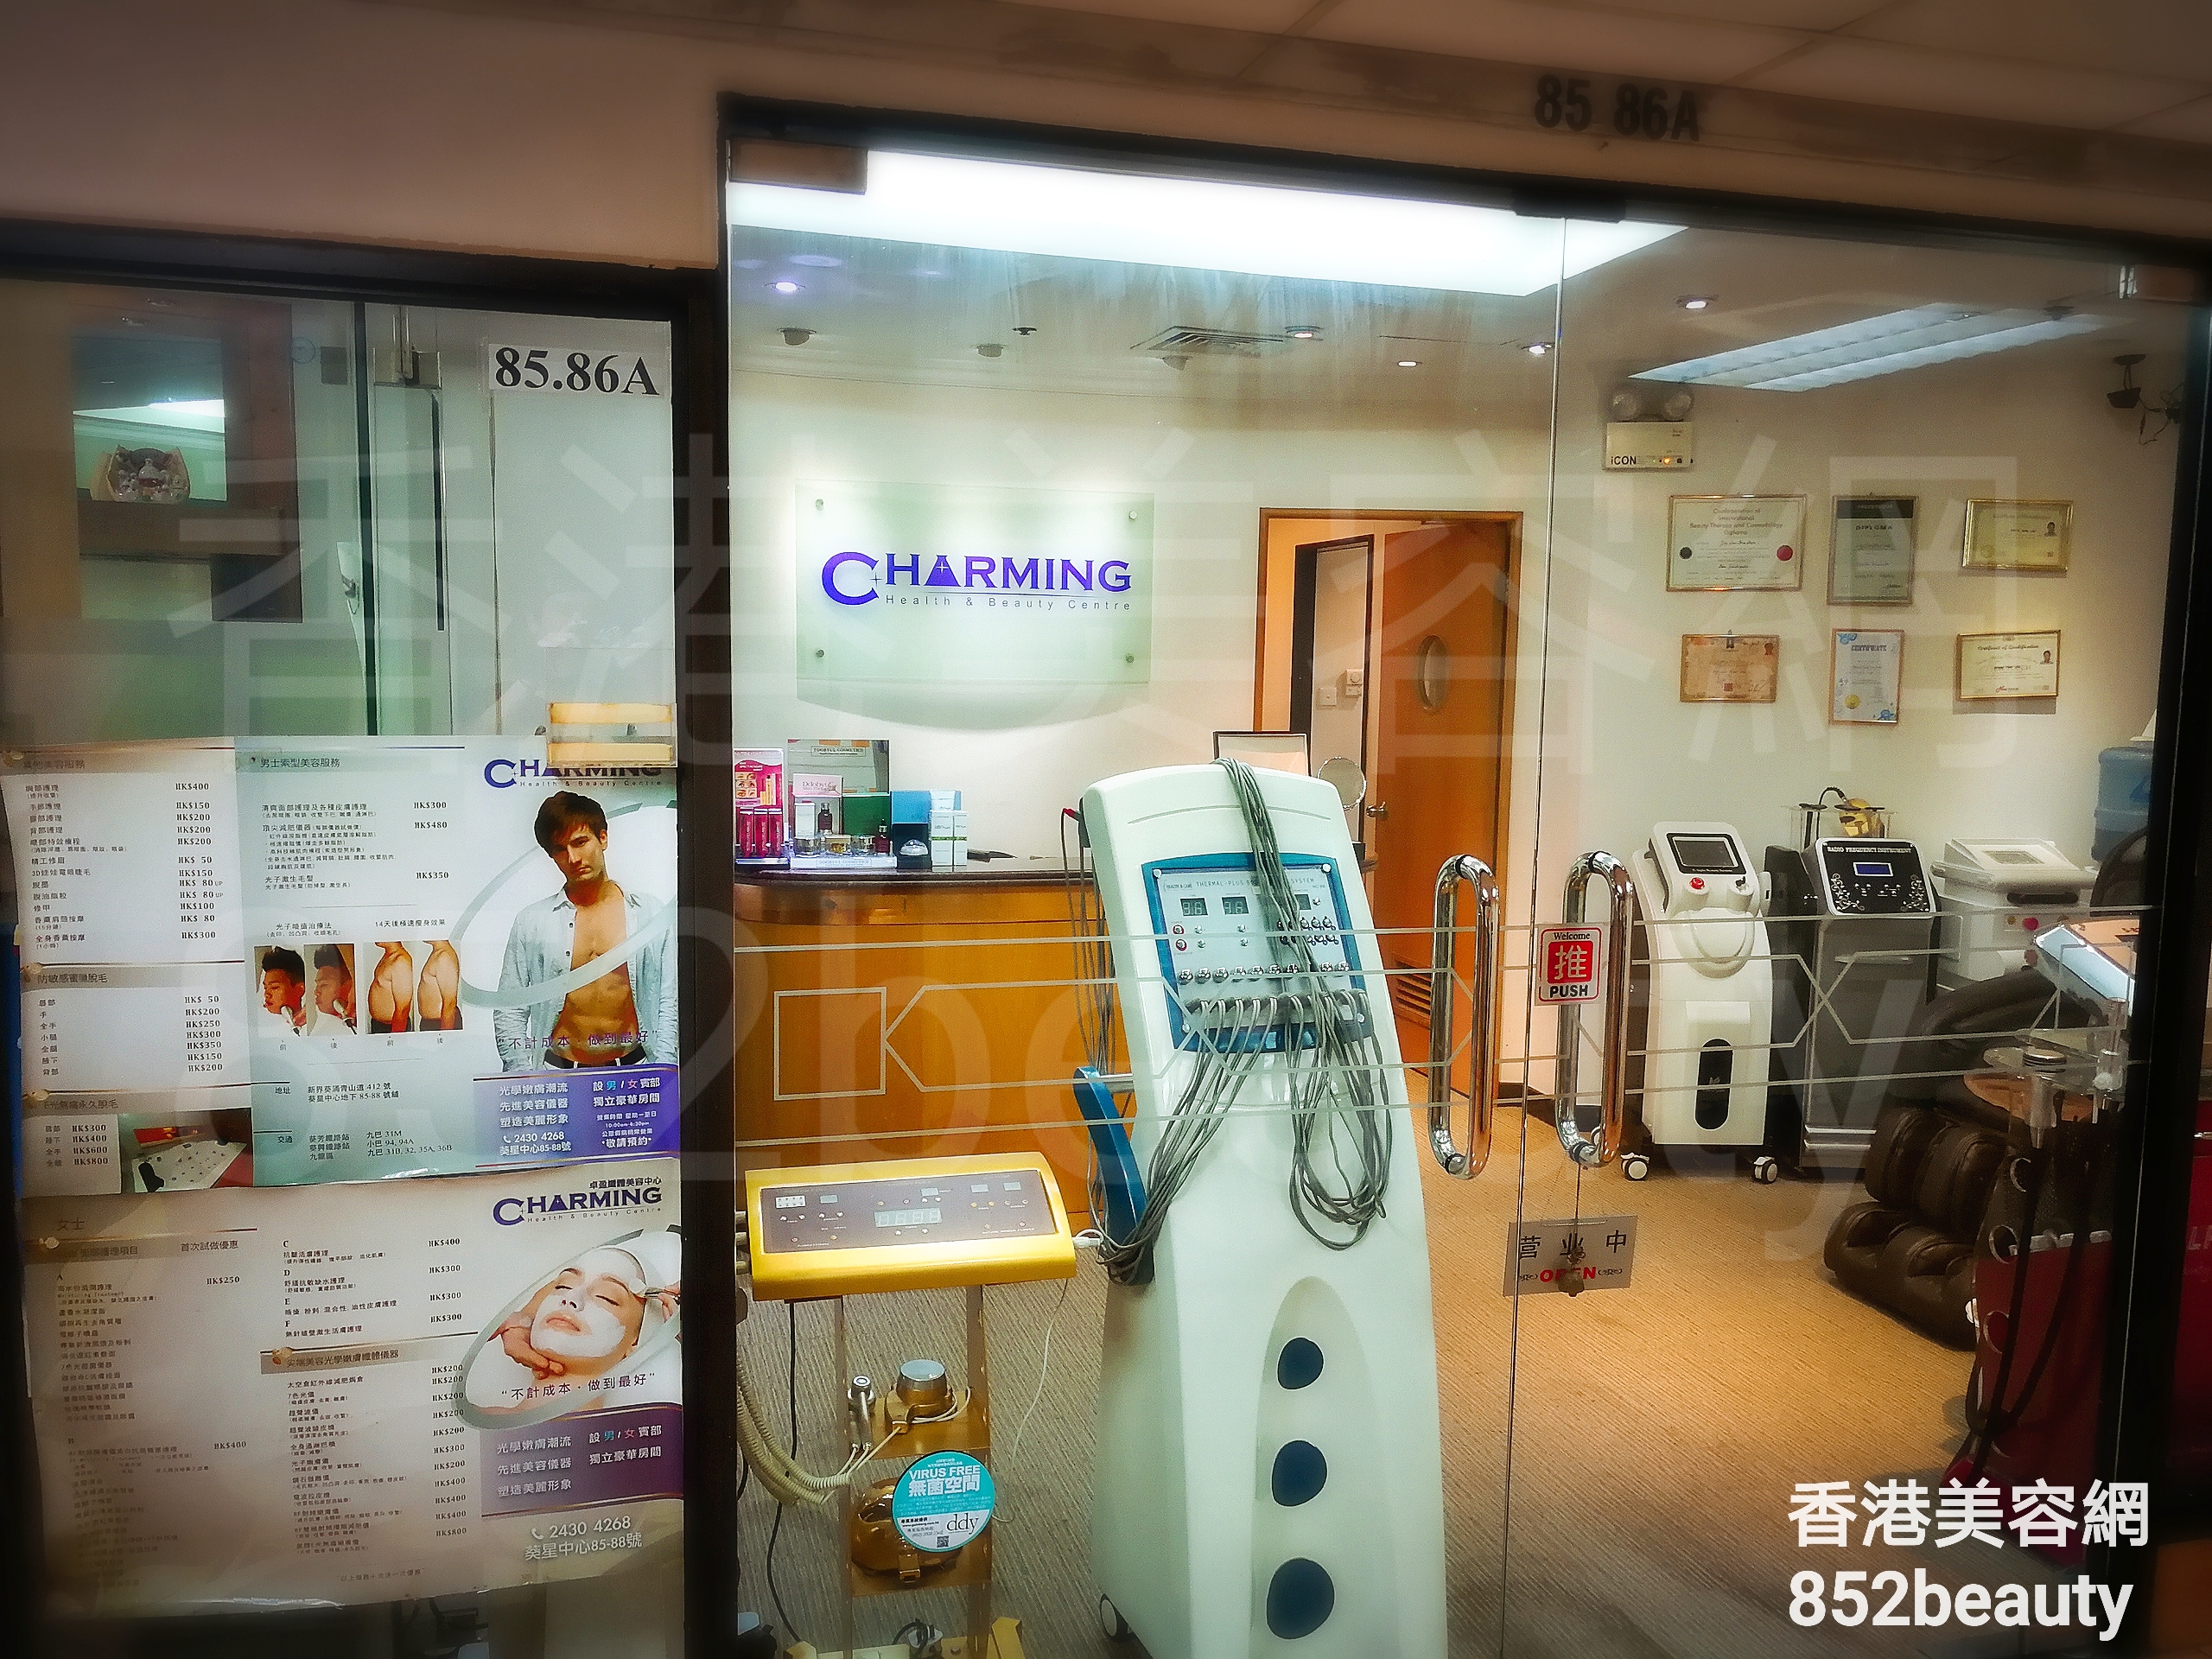 纖體瘦身: Charming Health & Beauty Centre